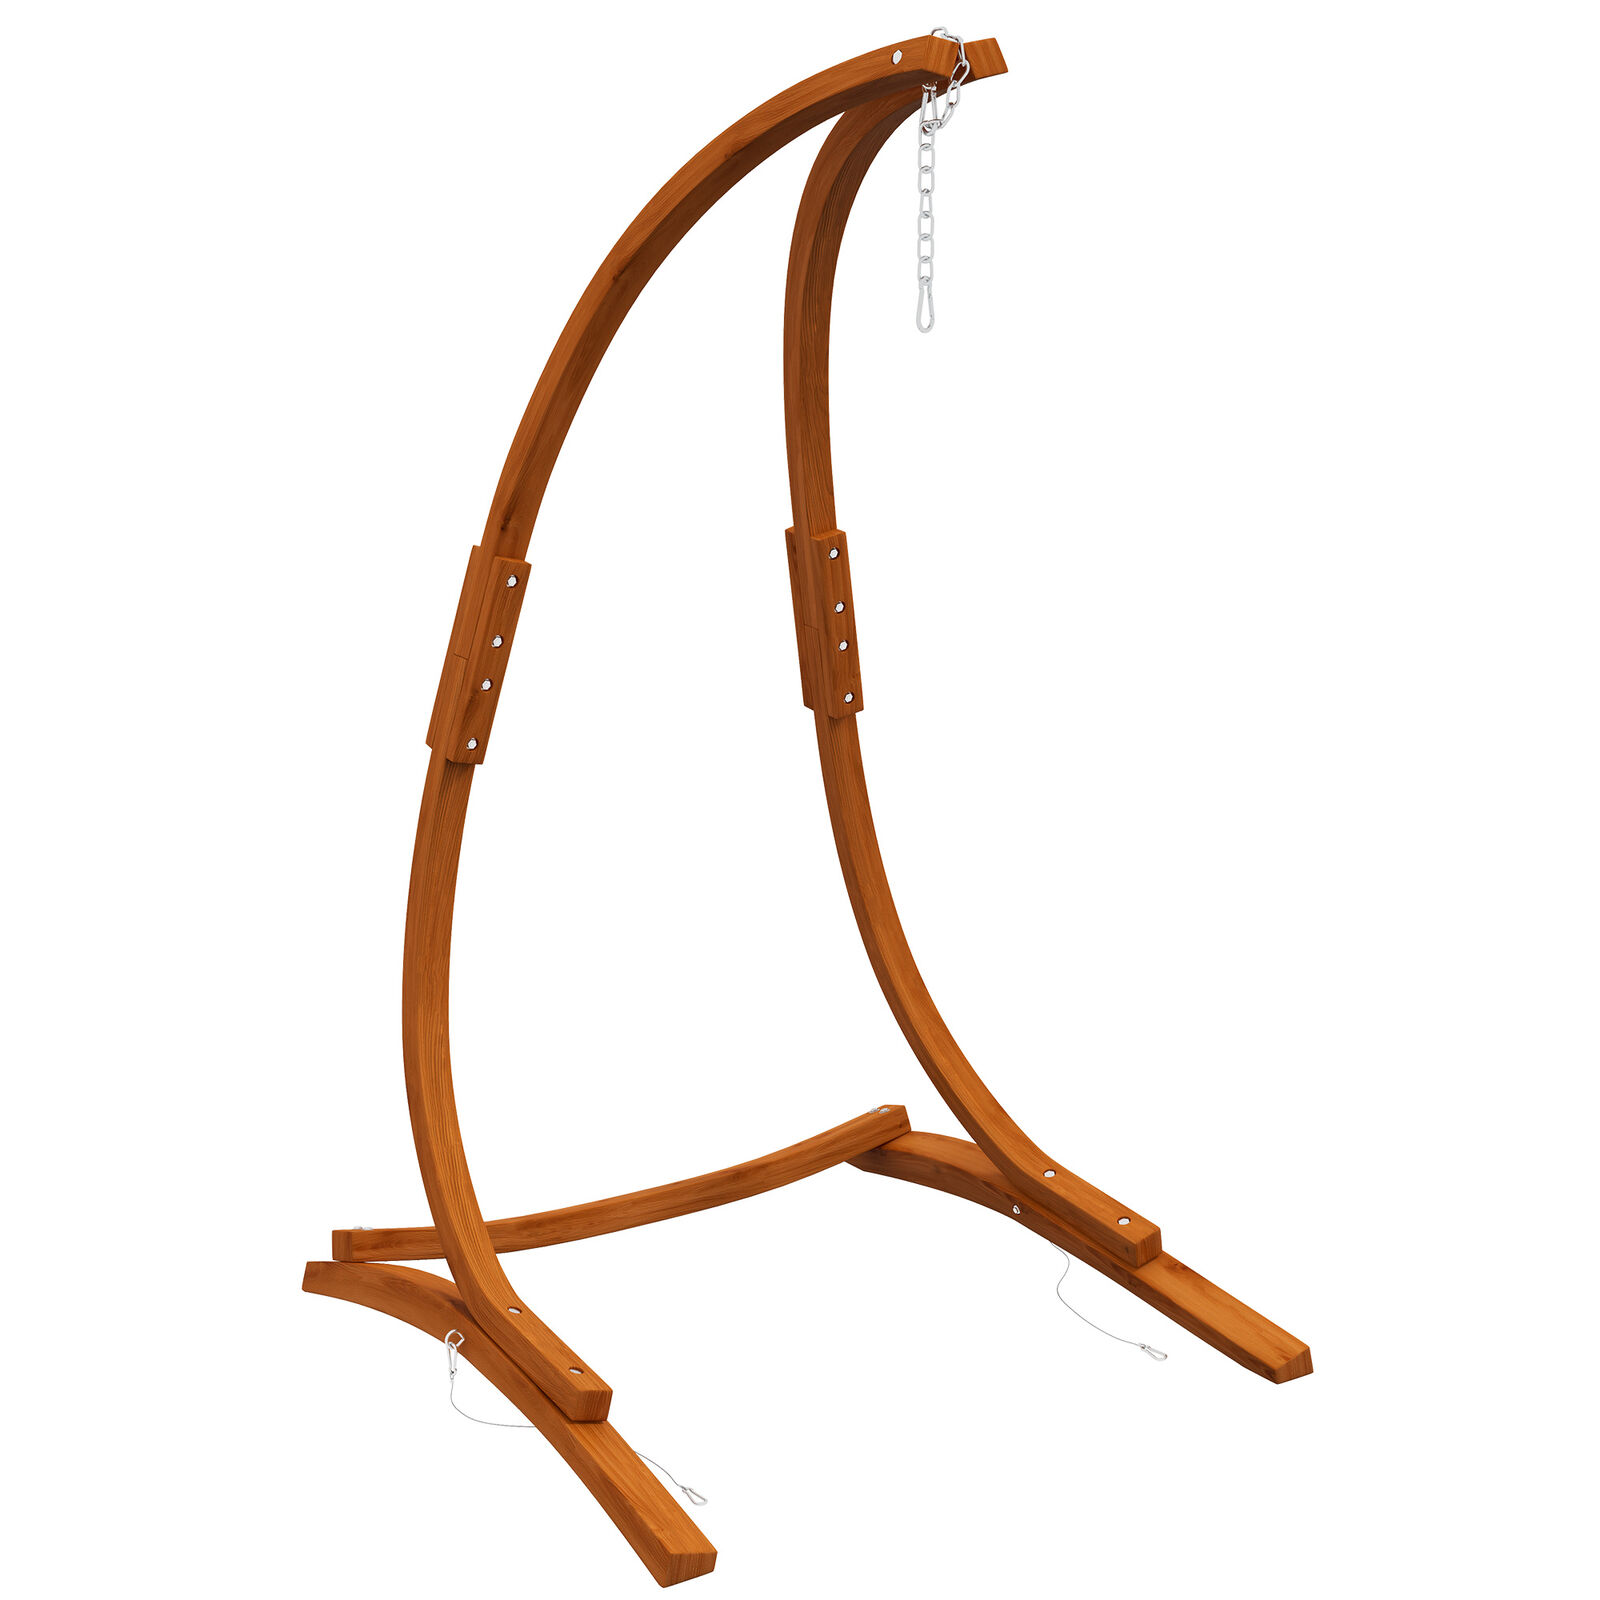 Hängestuhlgestell aus Holz Ständer für Hängestuhl Hängesesselgestell max. 150 kg